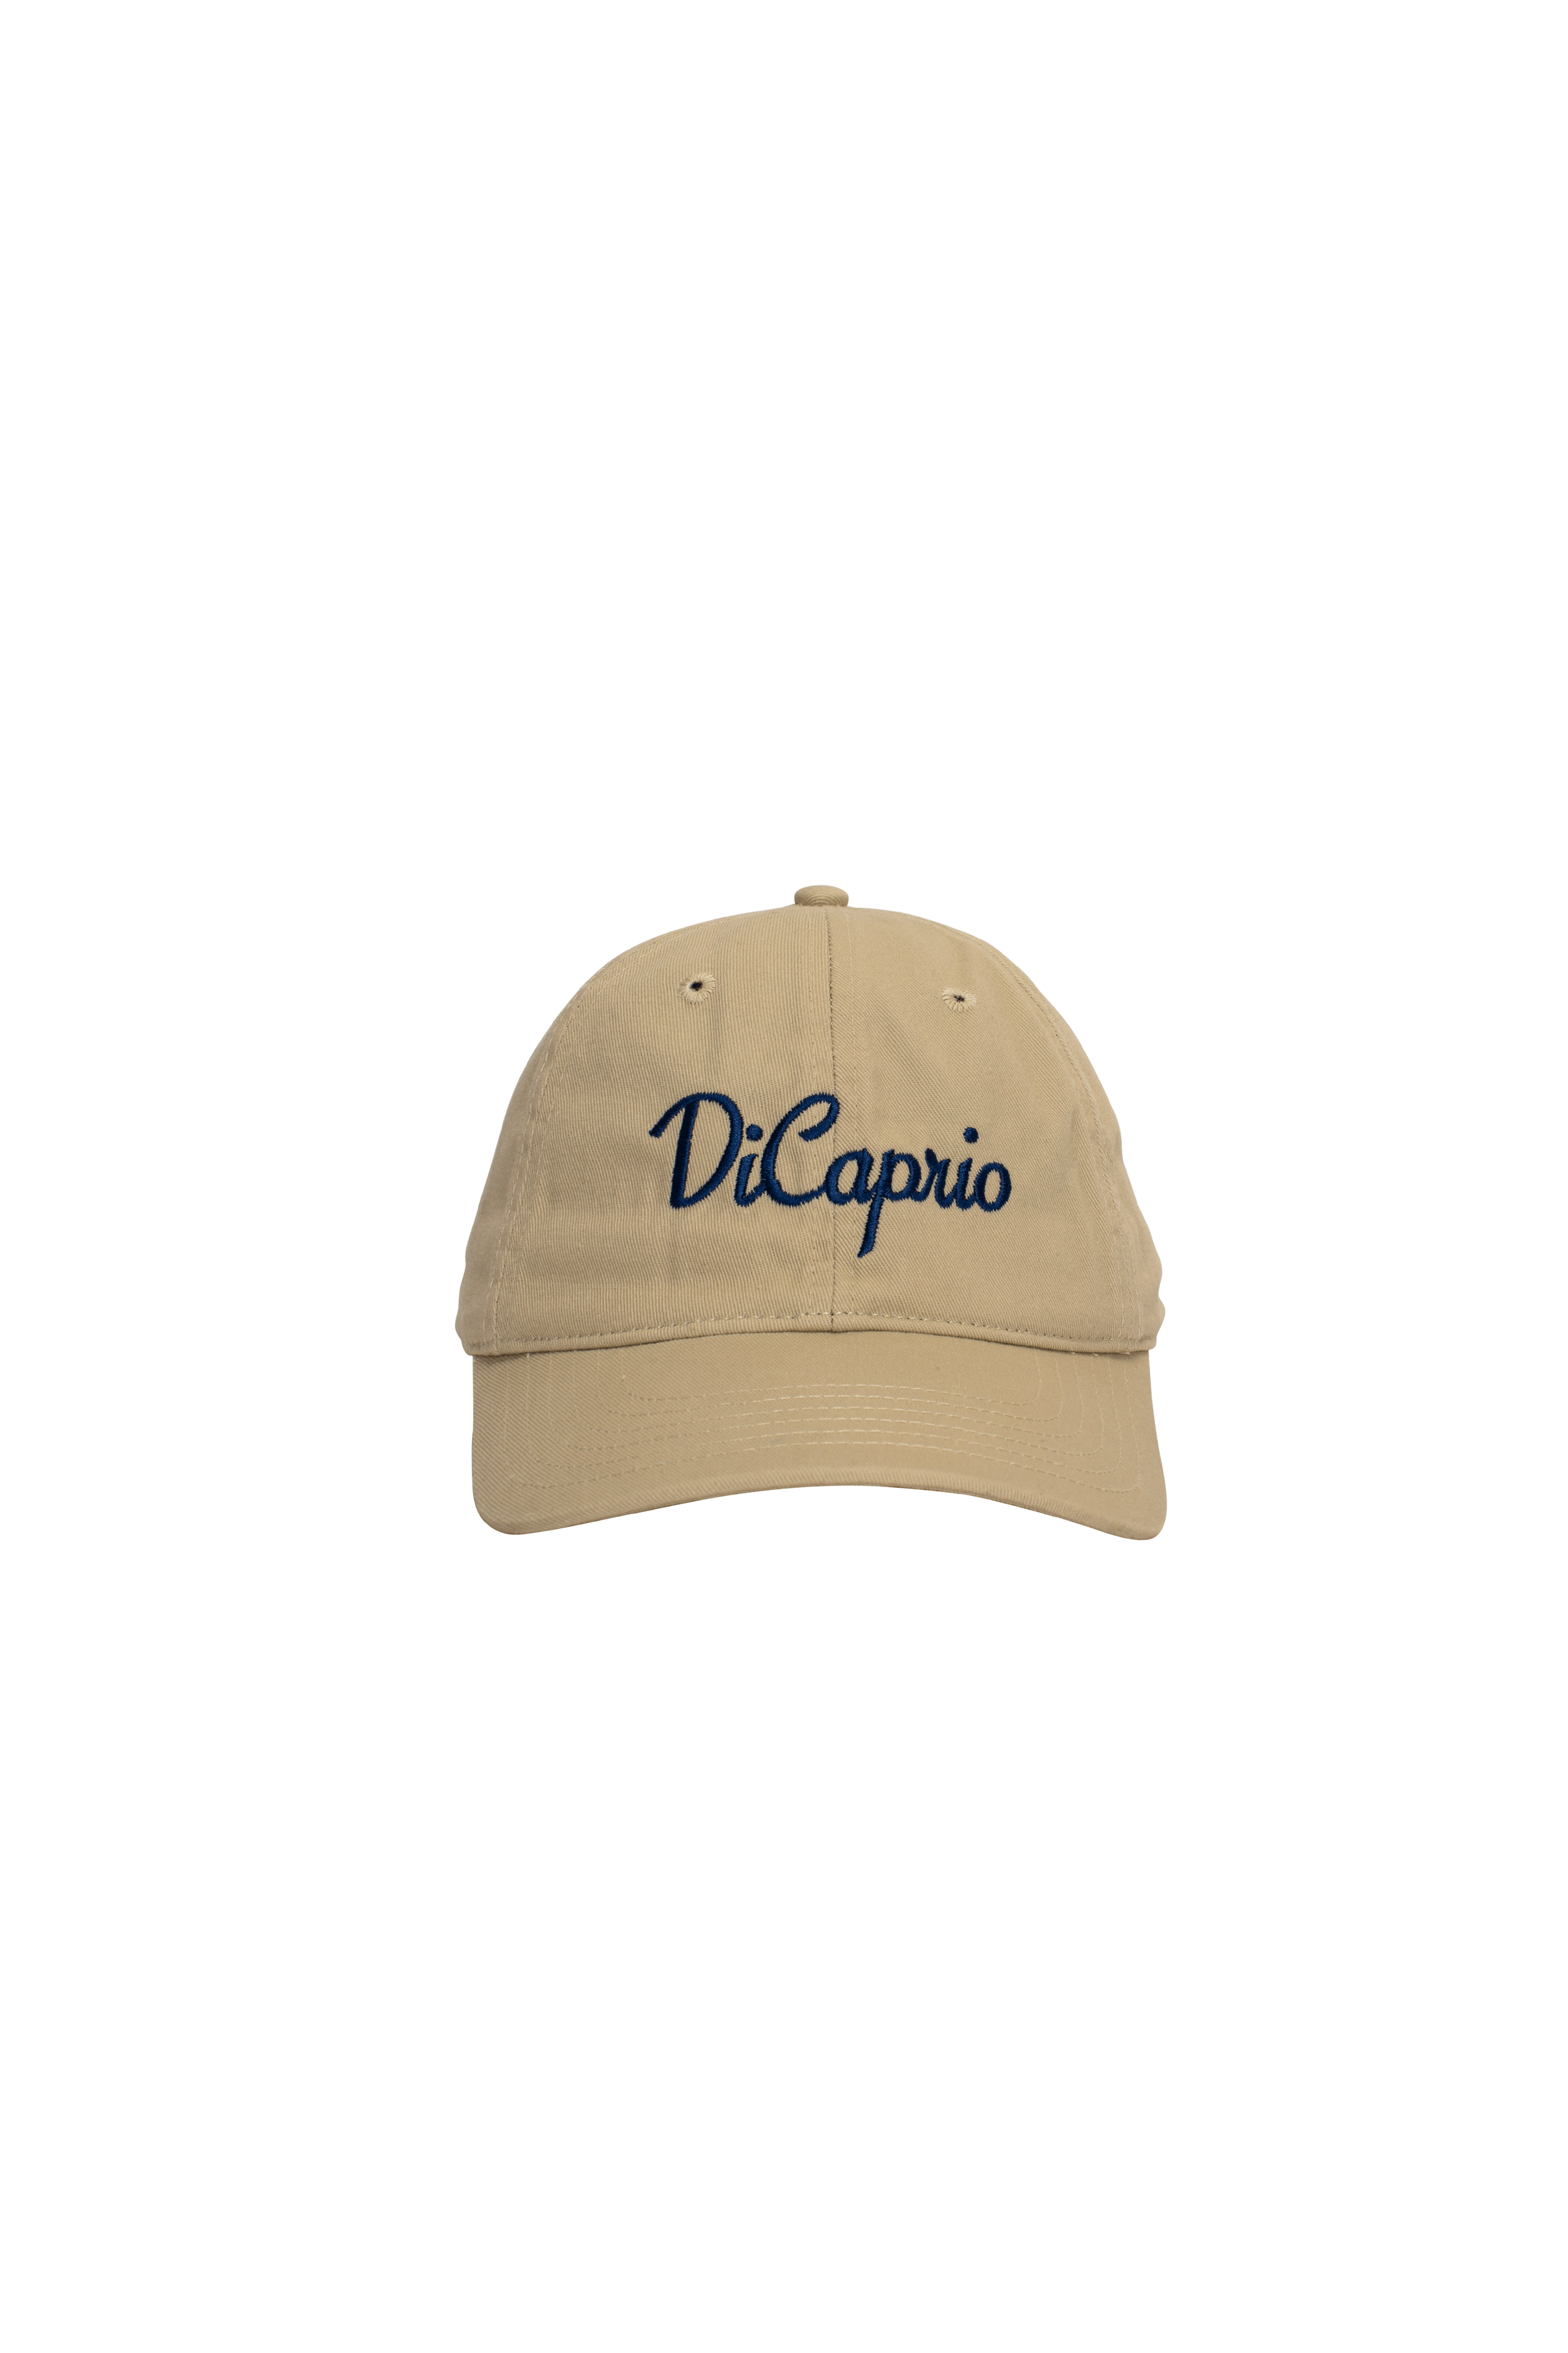 Dicaprio Hat